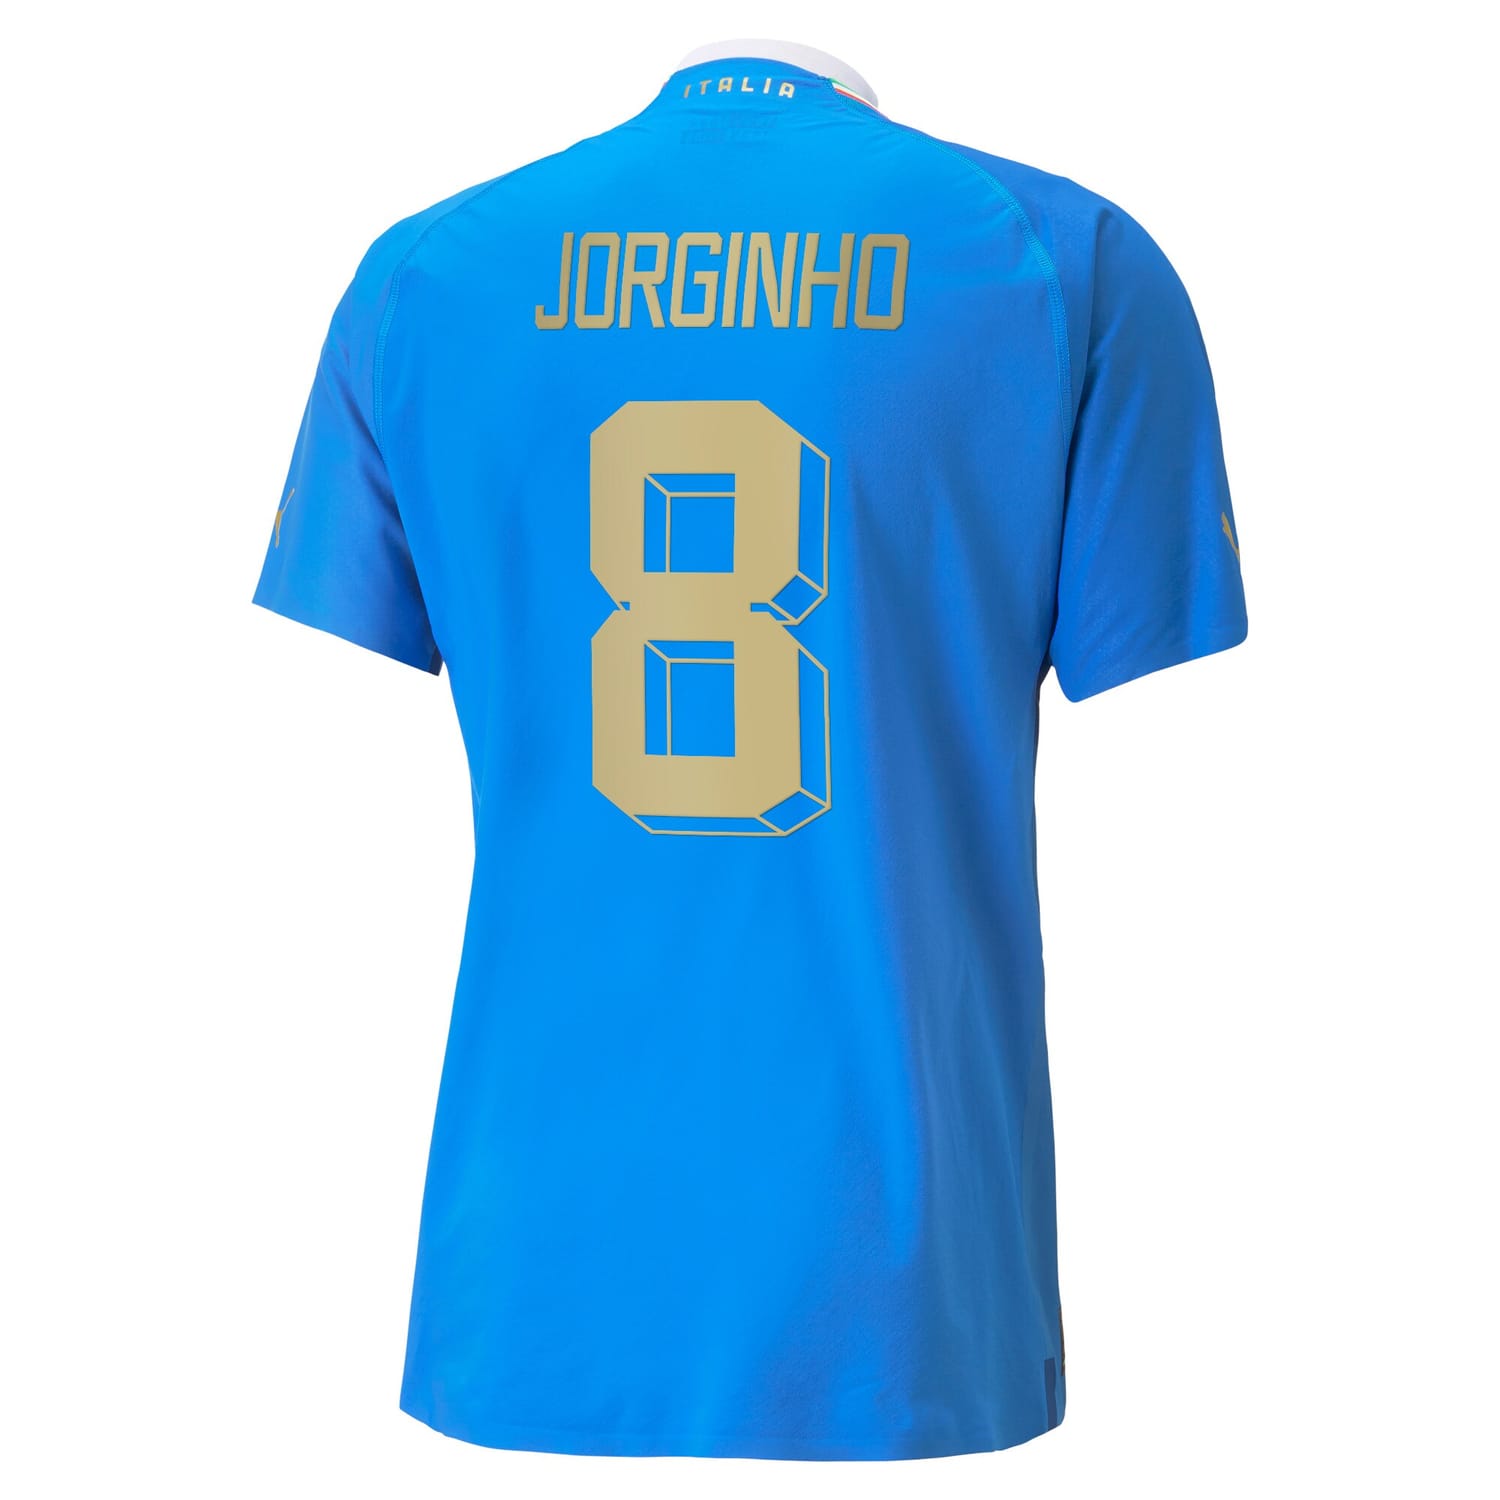 Italy National Team Home Authentic Jersey Shirt player Jorginho 8 printing for Men